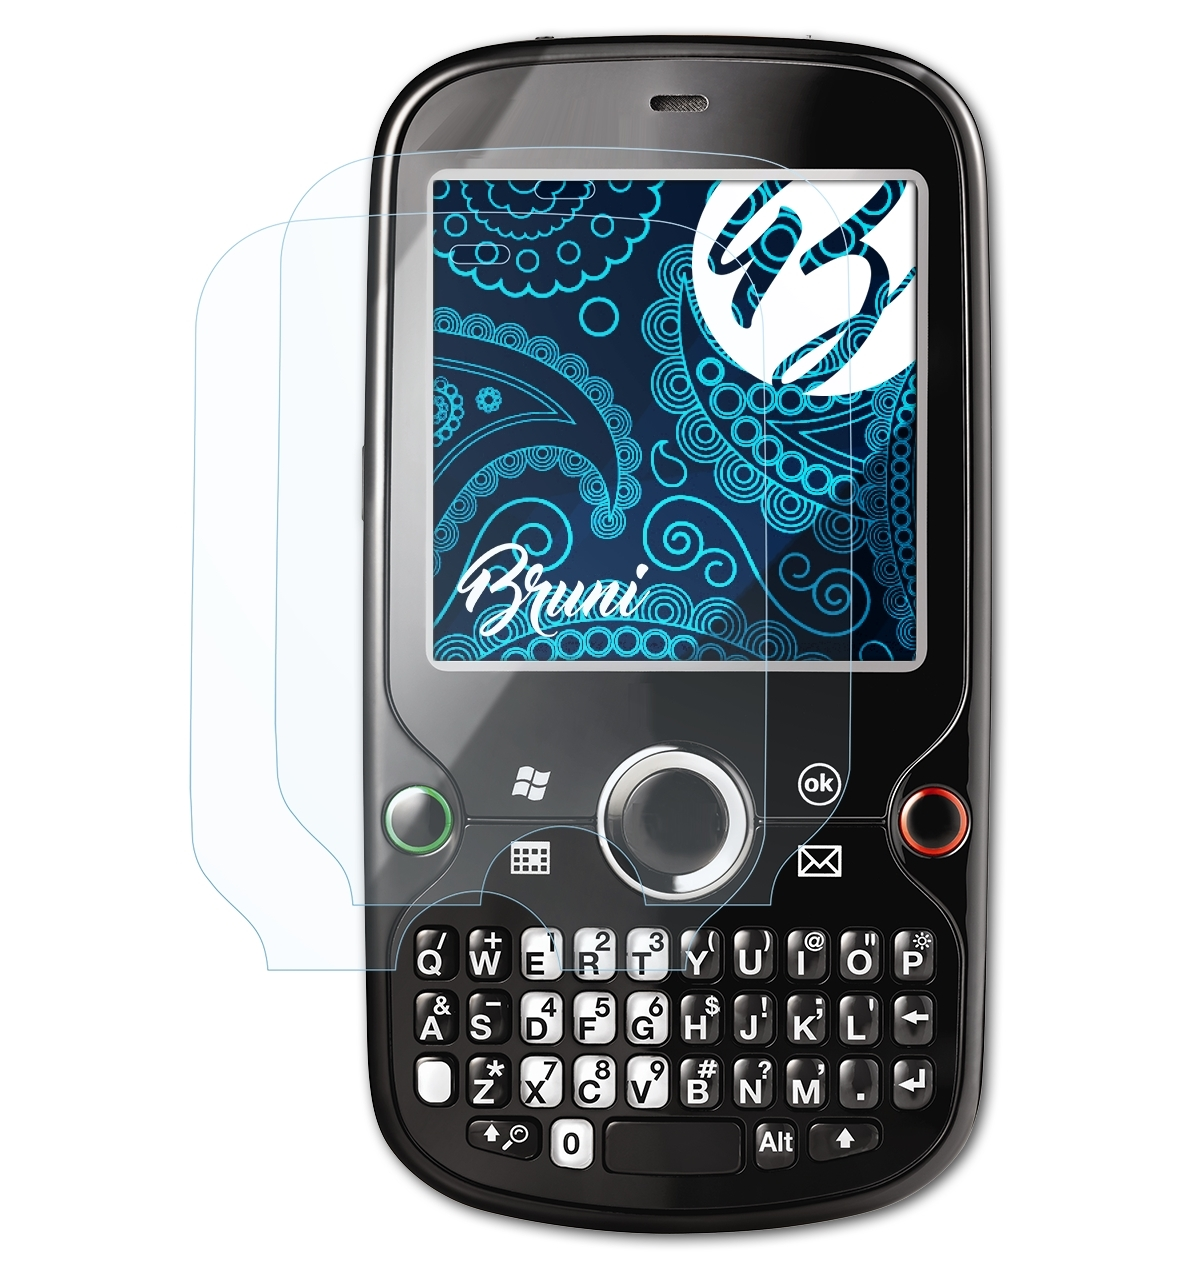 Basics-Clear Schutzfolie(für Palm Pro) 2x BRUNI Treo